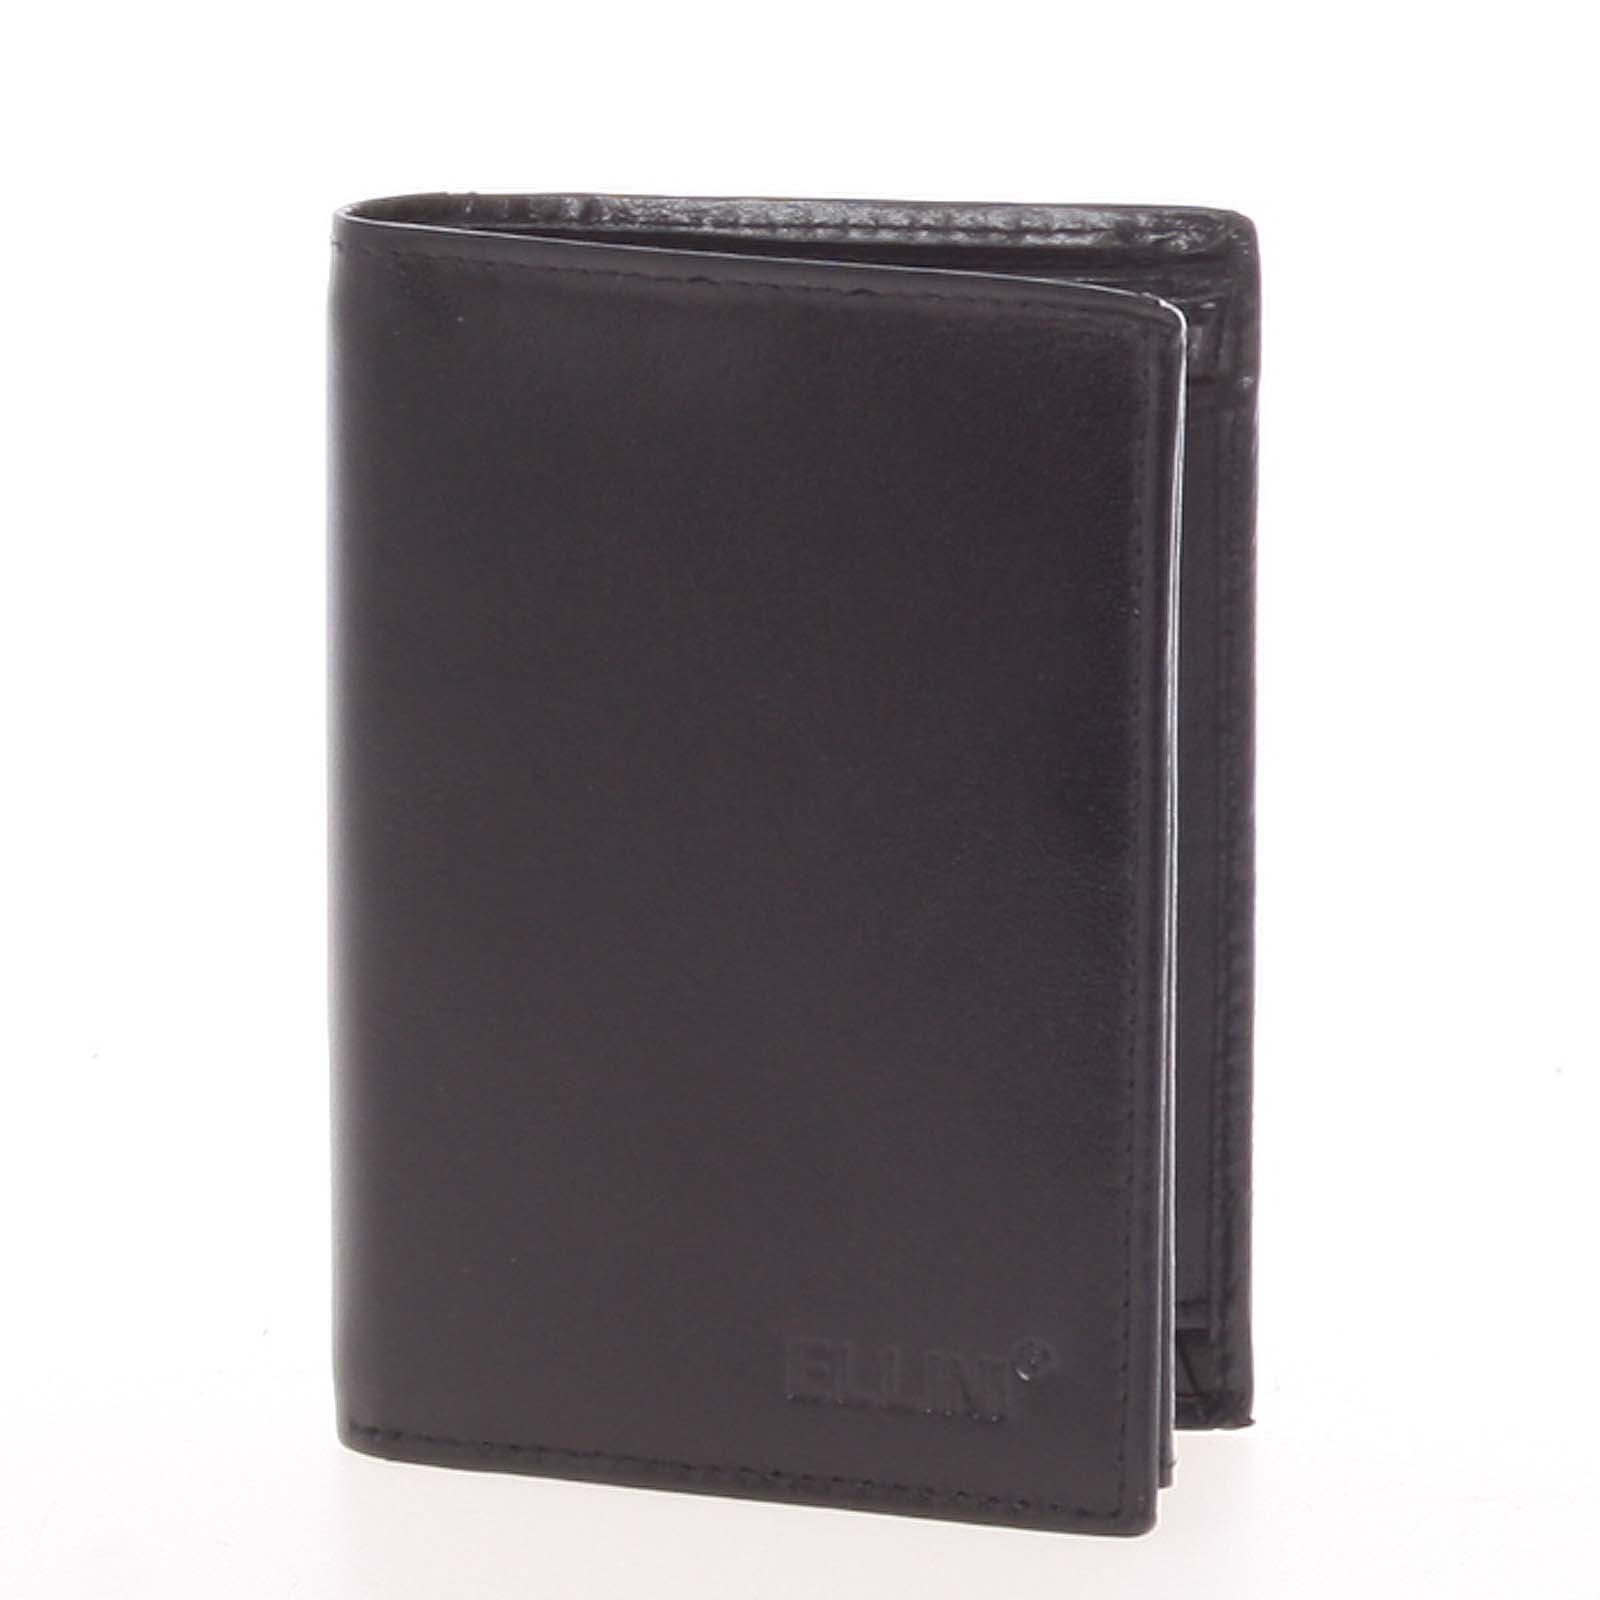 Elegantní pánská kožená volná peněženka černá - Ellini Noran